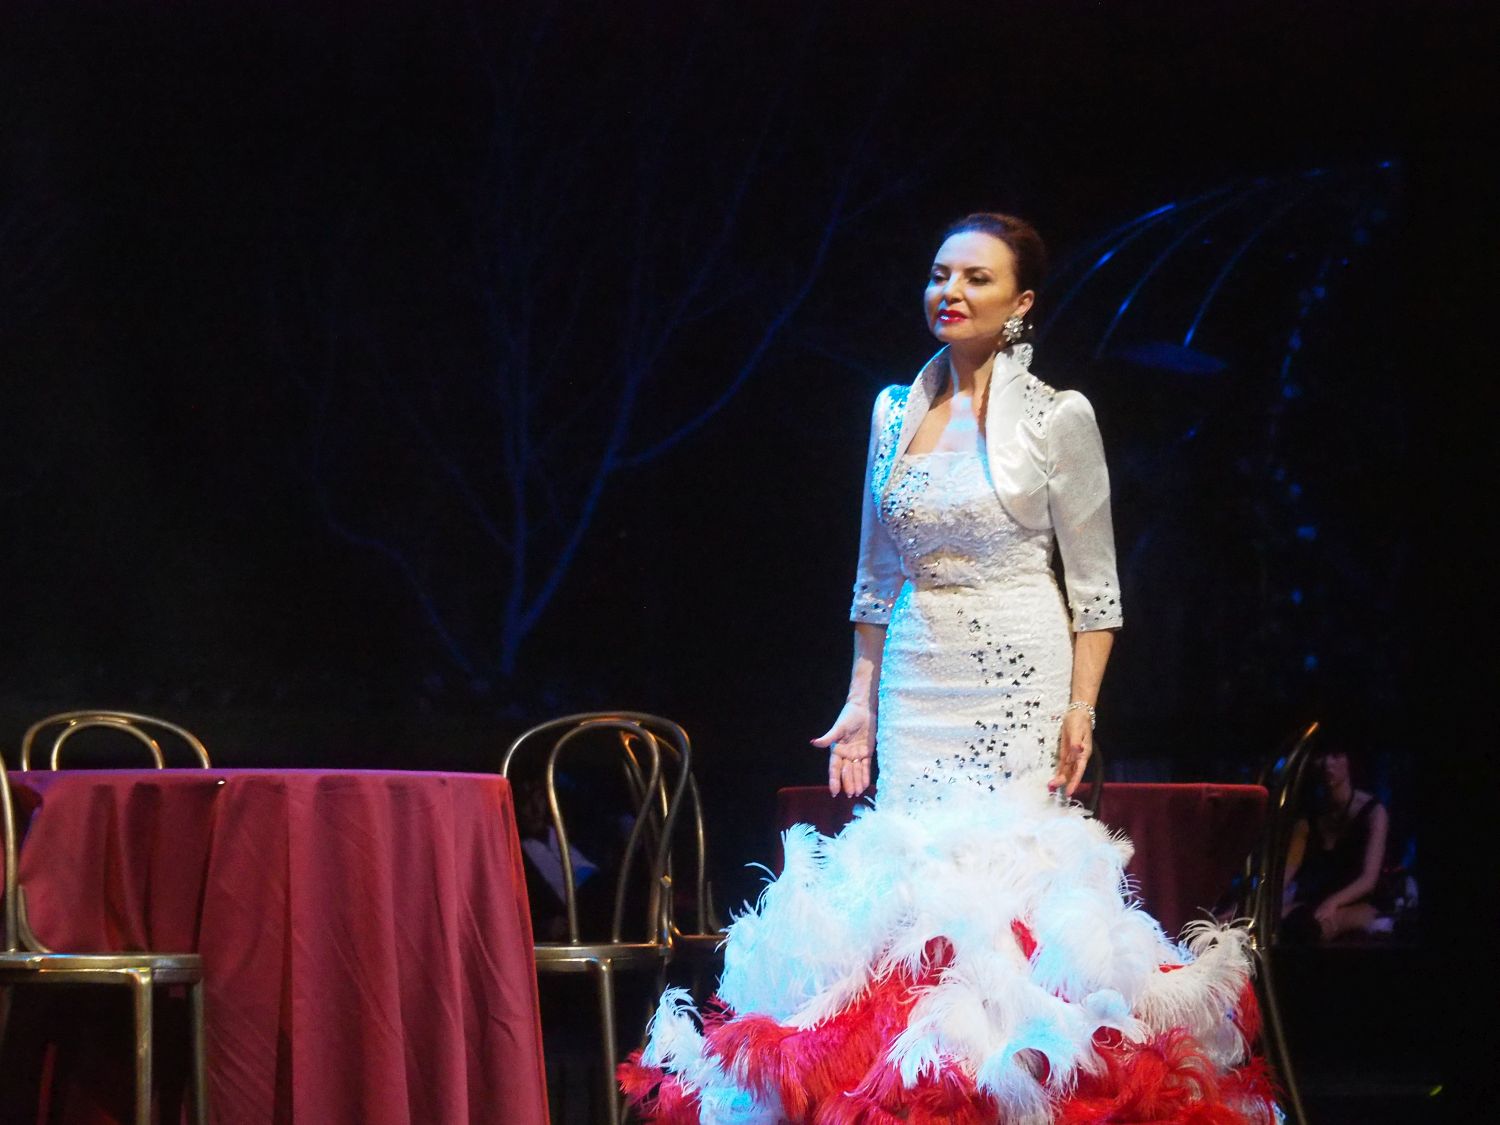 Kobieta w białej sukni stoi na scenie. Obok niej stoi okrągły stolik nakryty czerwonym materiałem